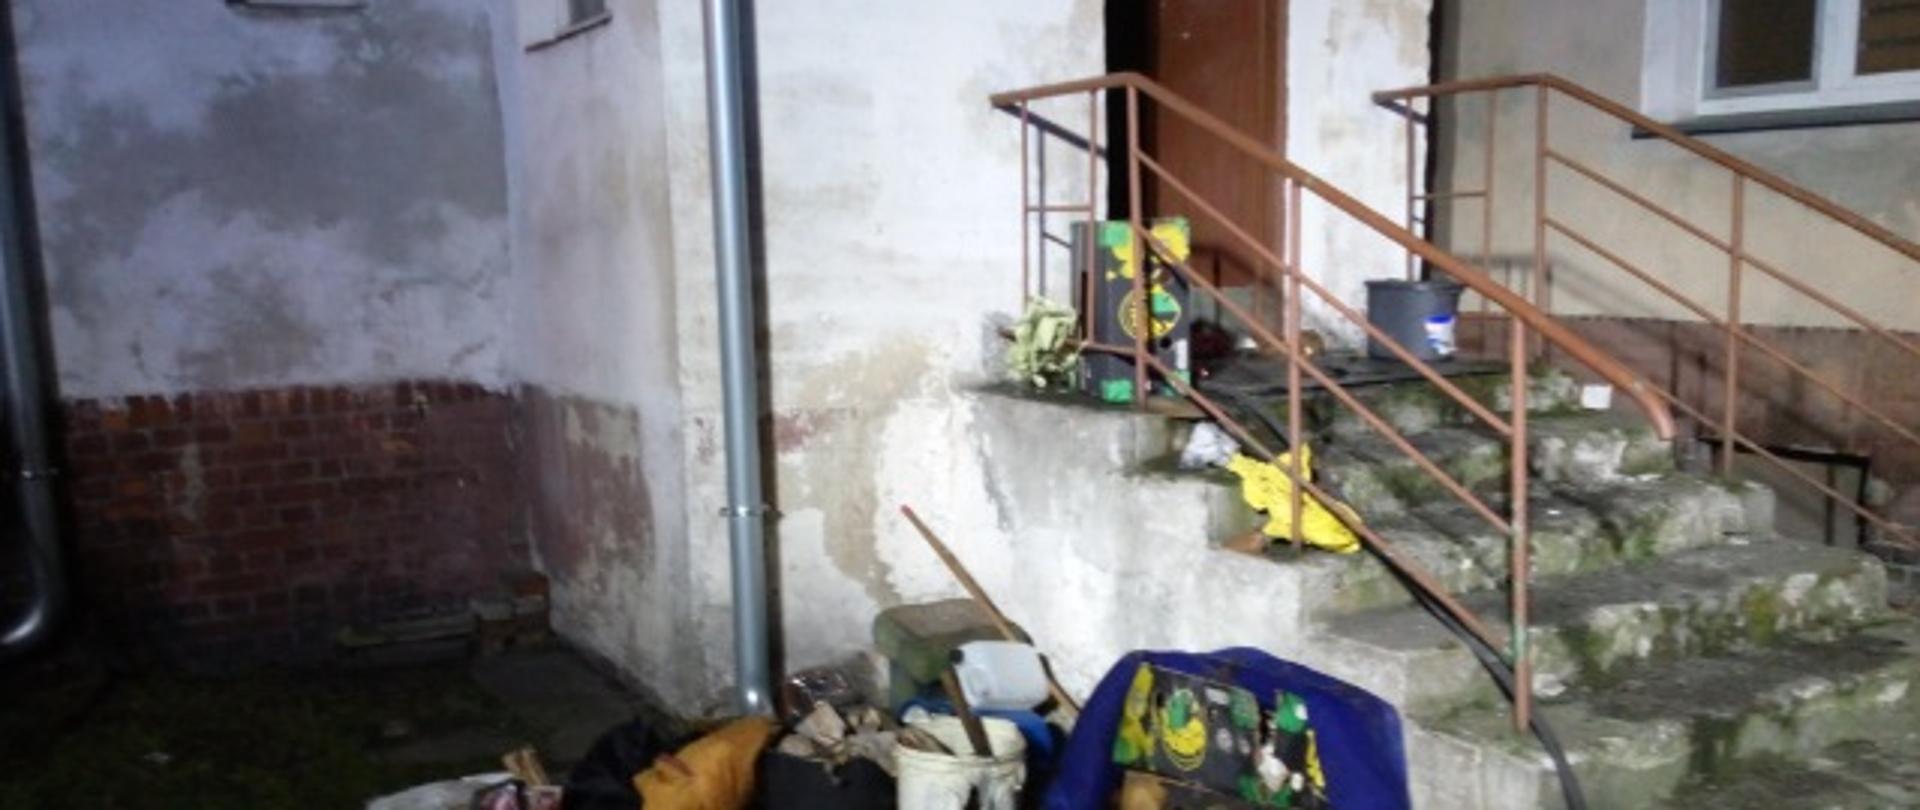 Na zdjęciu widać wejście do budynku, po schodach i porozrzucane rzeczy w okolicy